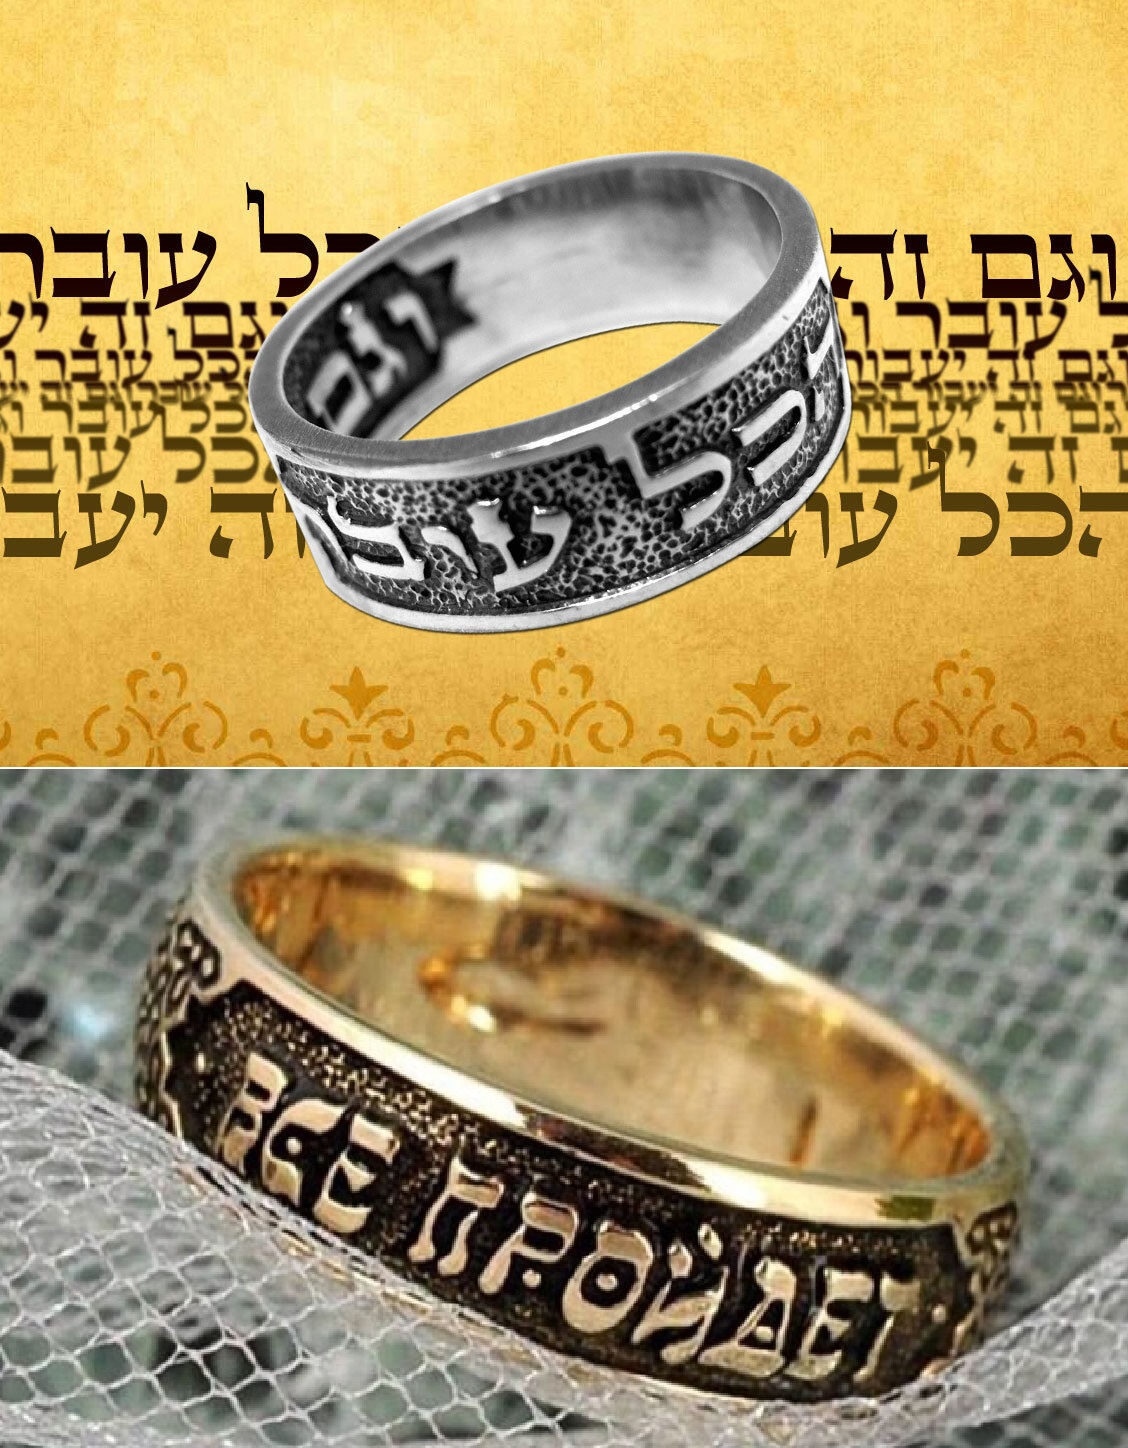 Надпись на кольце царя Соломона в оригинале